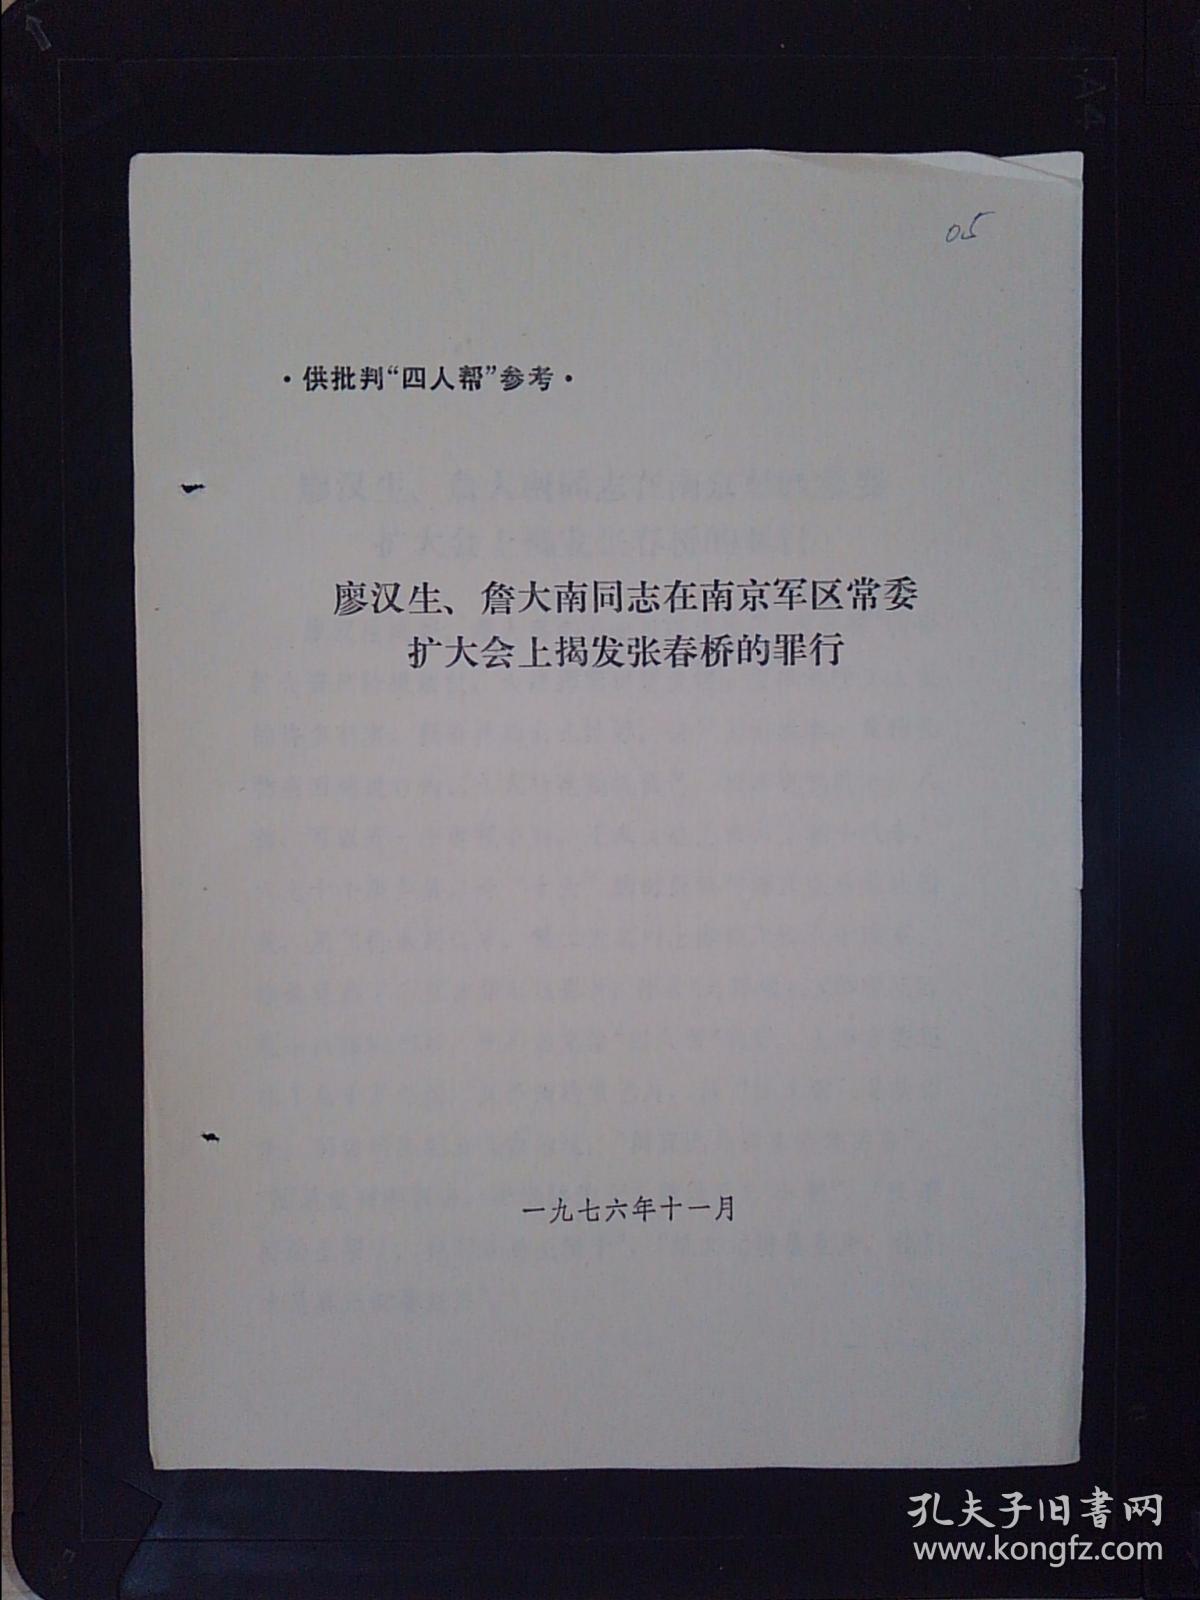 廖汉生、詹大南同志在南京军区常委扩大会上揭发张春桥的罪行